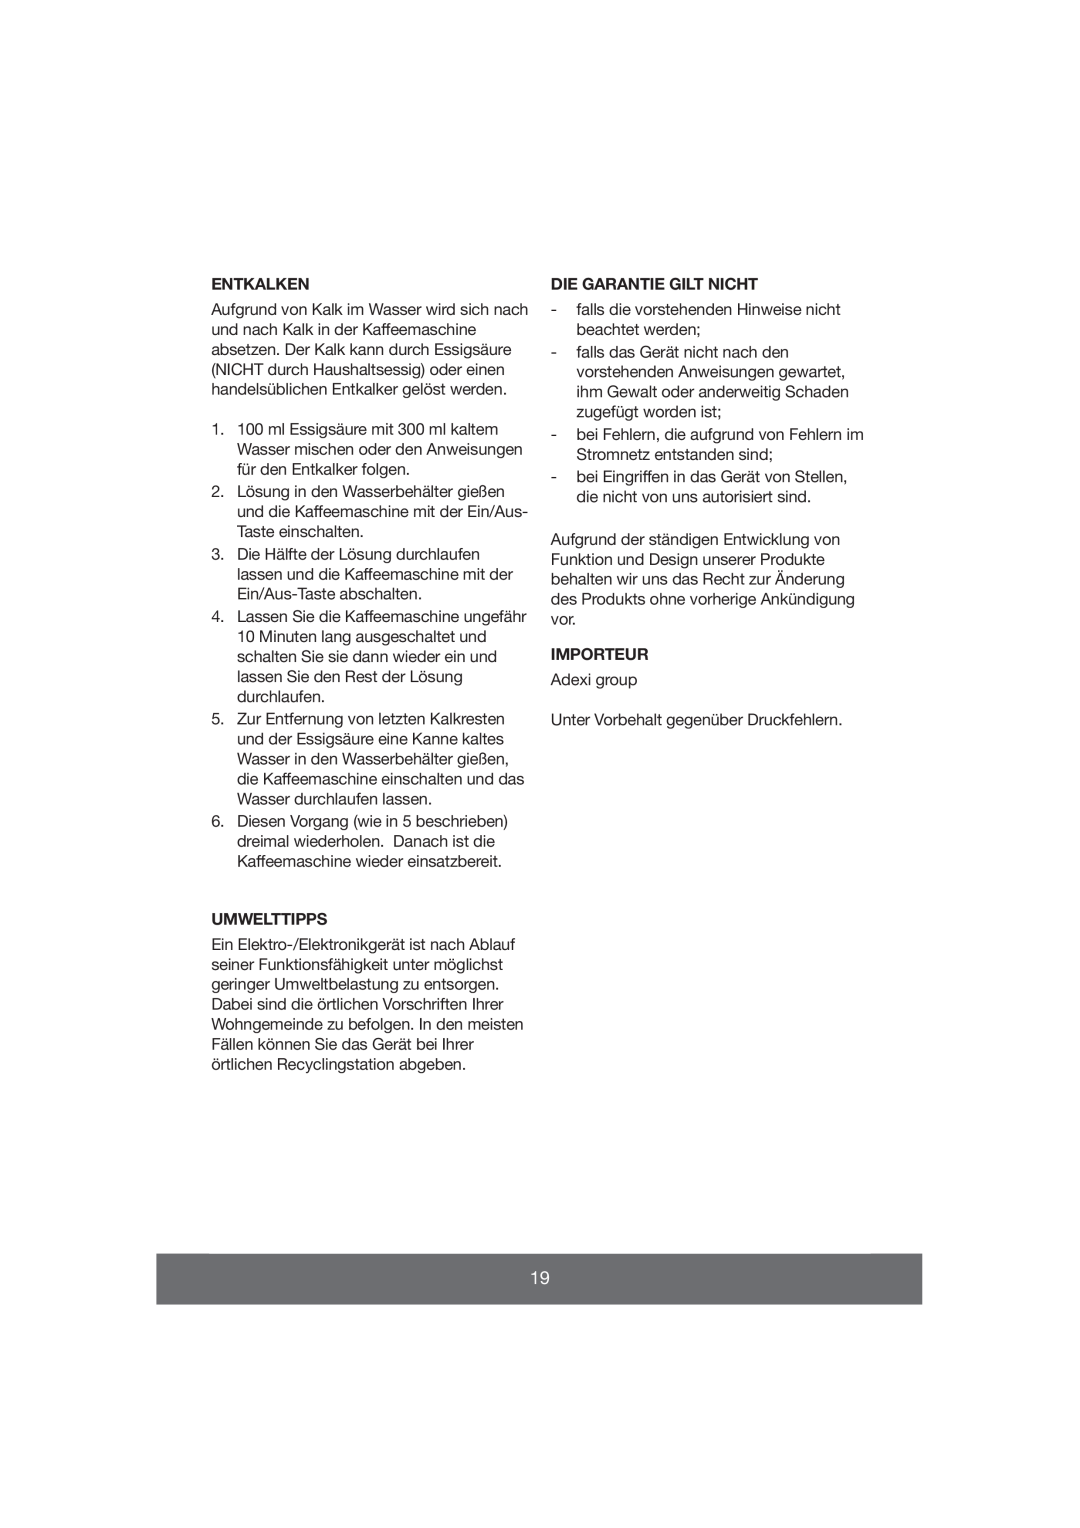 Butler 645-071 manual Entkalken, Umwelttipps, Die Garantie Gilt Nicht, Importeur 